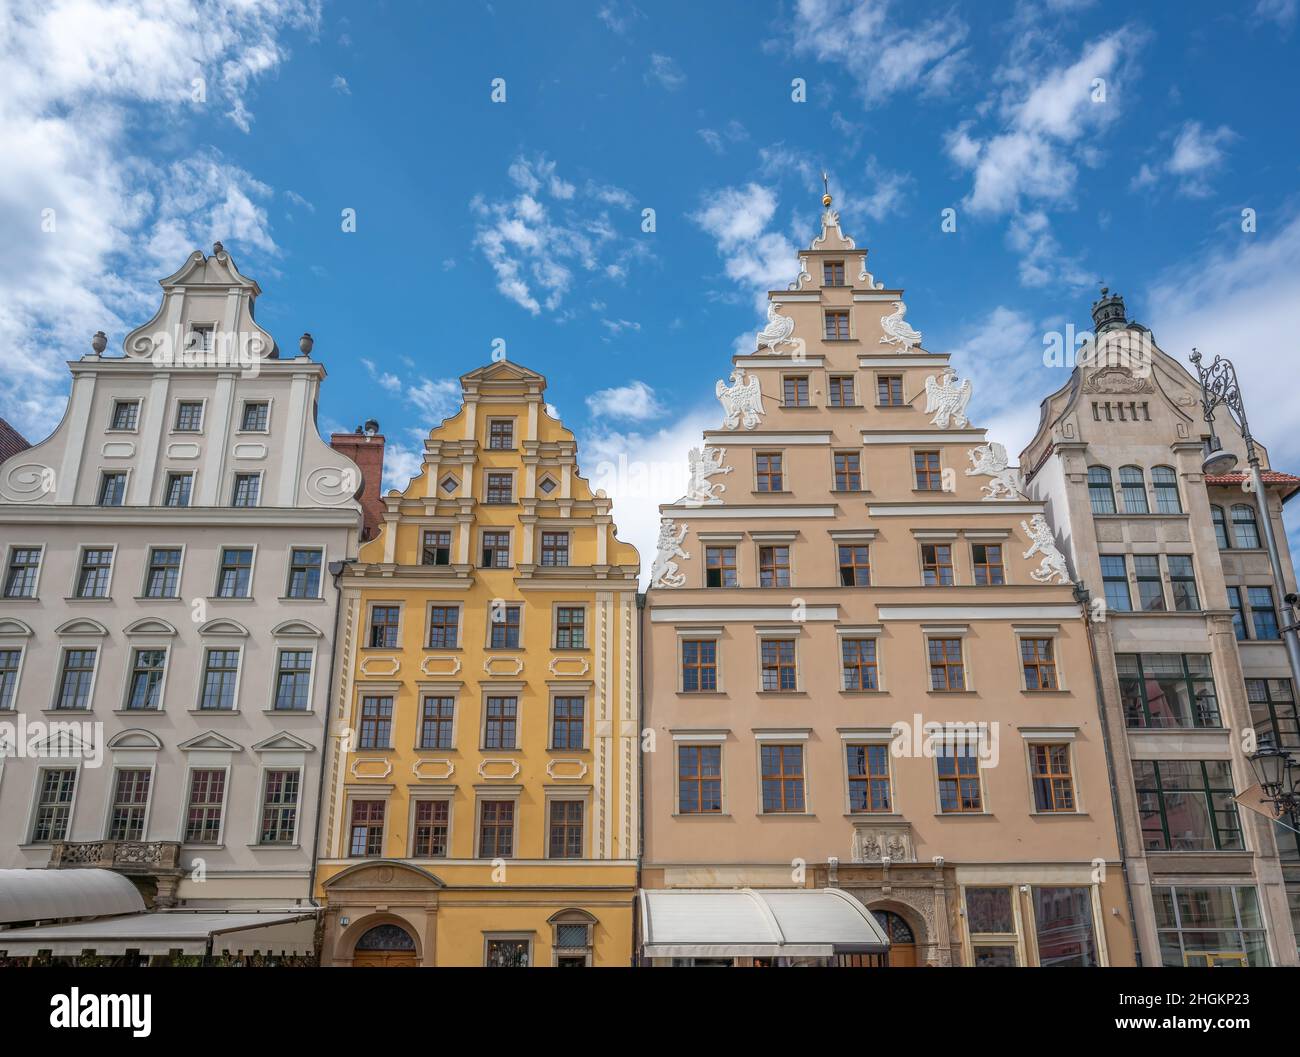 La ville colorée abrite des bâtiments sur la place du marché (place Rynek) - Wroclaw, Pologne Banque D'Images